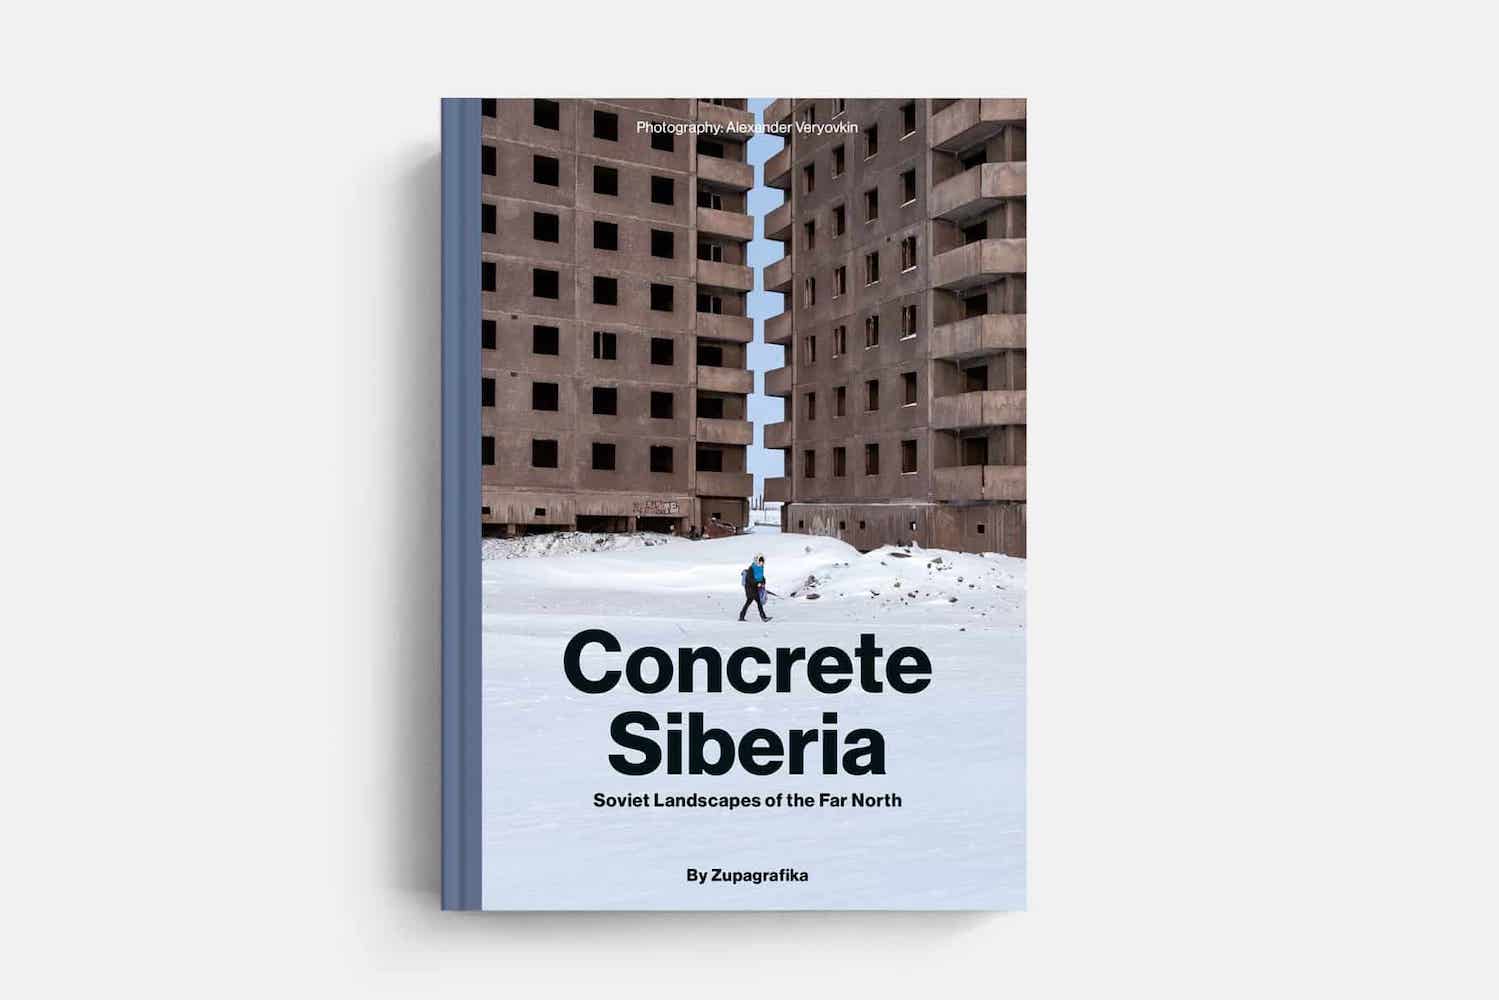 Concrete Siberia book cover. Image: Zupagrafika